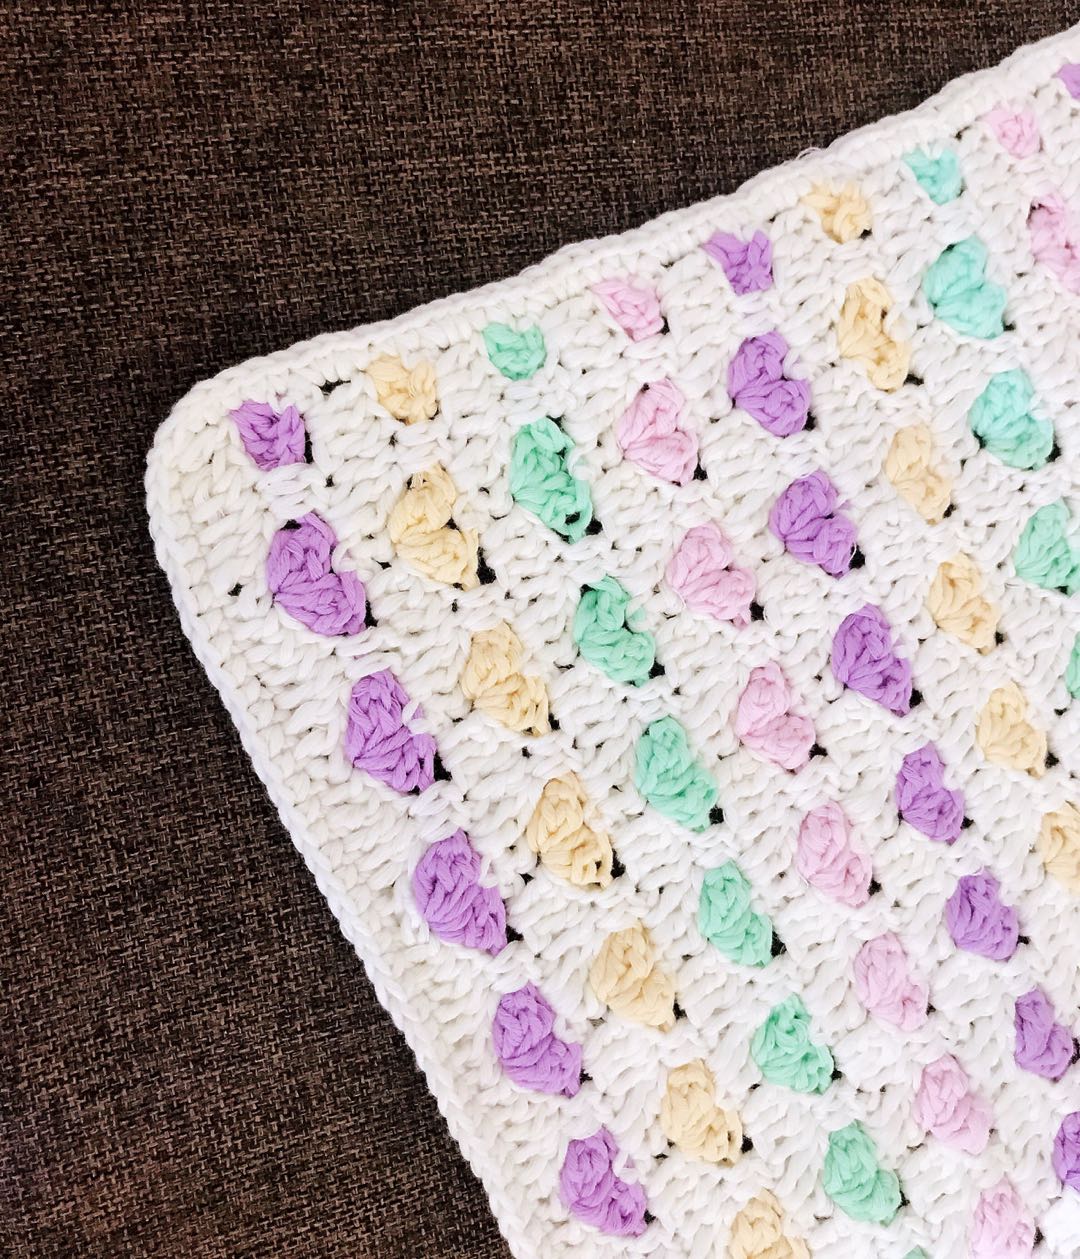 之前也给大家讲解过其他❤爱心毯的制作，今天这款毯子相较以前的毯子钩织方法更加简单易学。
大家可以根据自己的喜好选择搭配喜欢的颜色，更加浪漫。👈🏼

用🧶牛奶棉编织，自己用或者给宝宝用都柔软舒适。这款爱心花毯花样密实。 成品厚实，作为居家盖毯，沙发垫子，桌布等都非常实用呢！